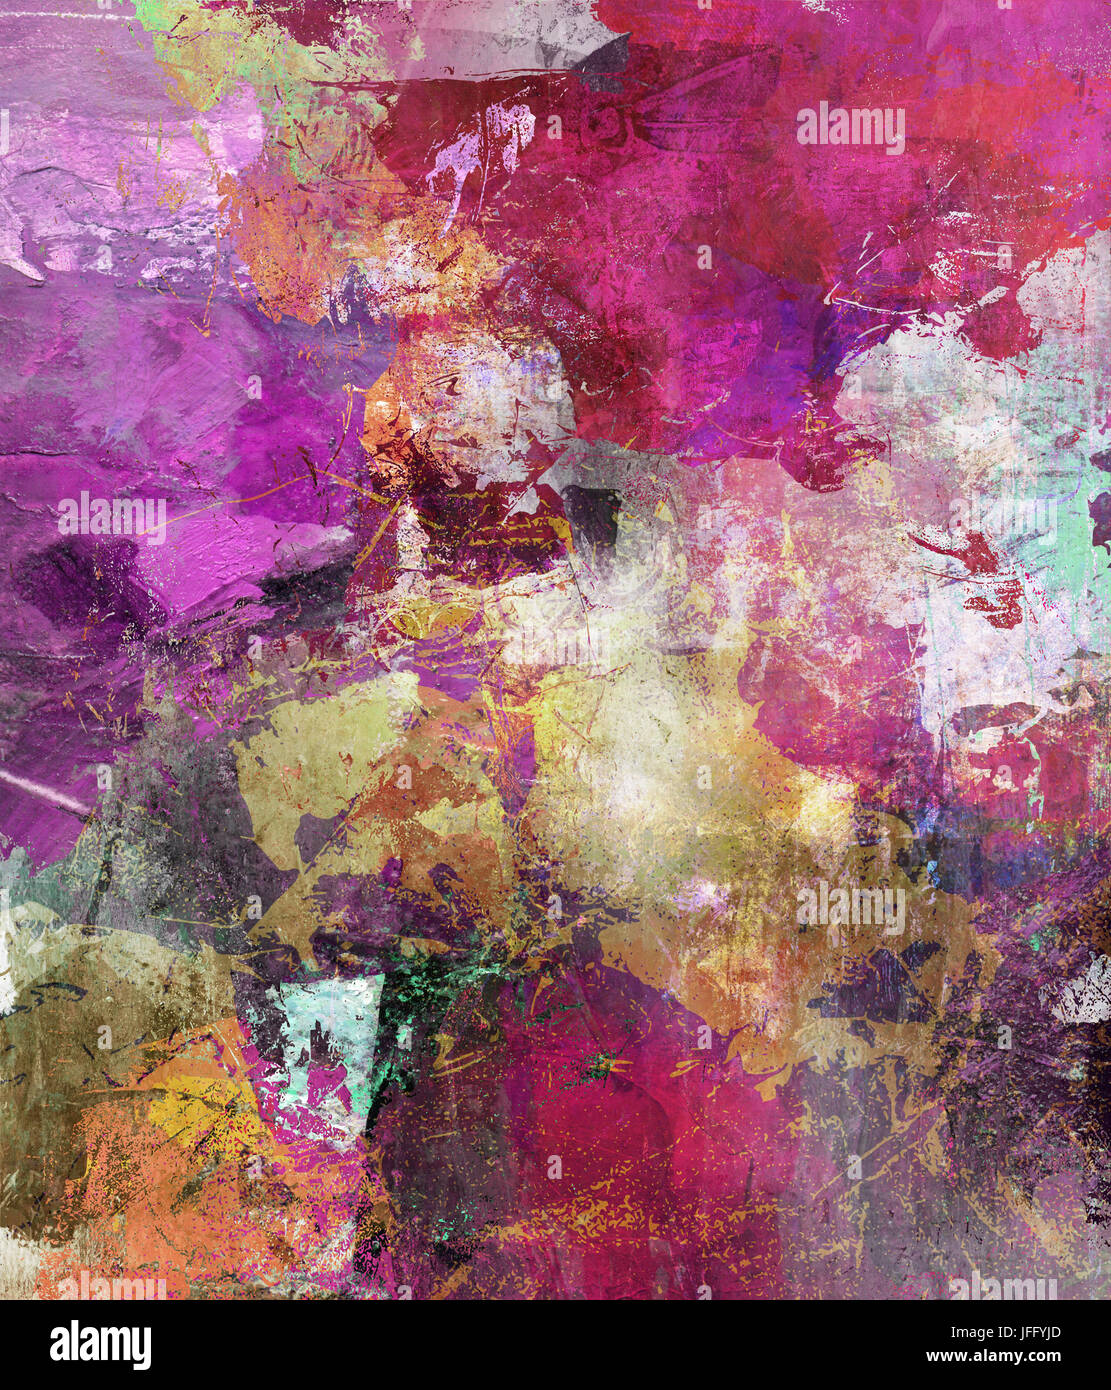 abstract mixed media artwork Stock Photo